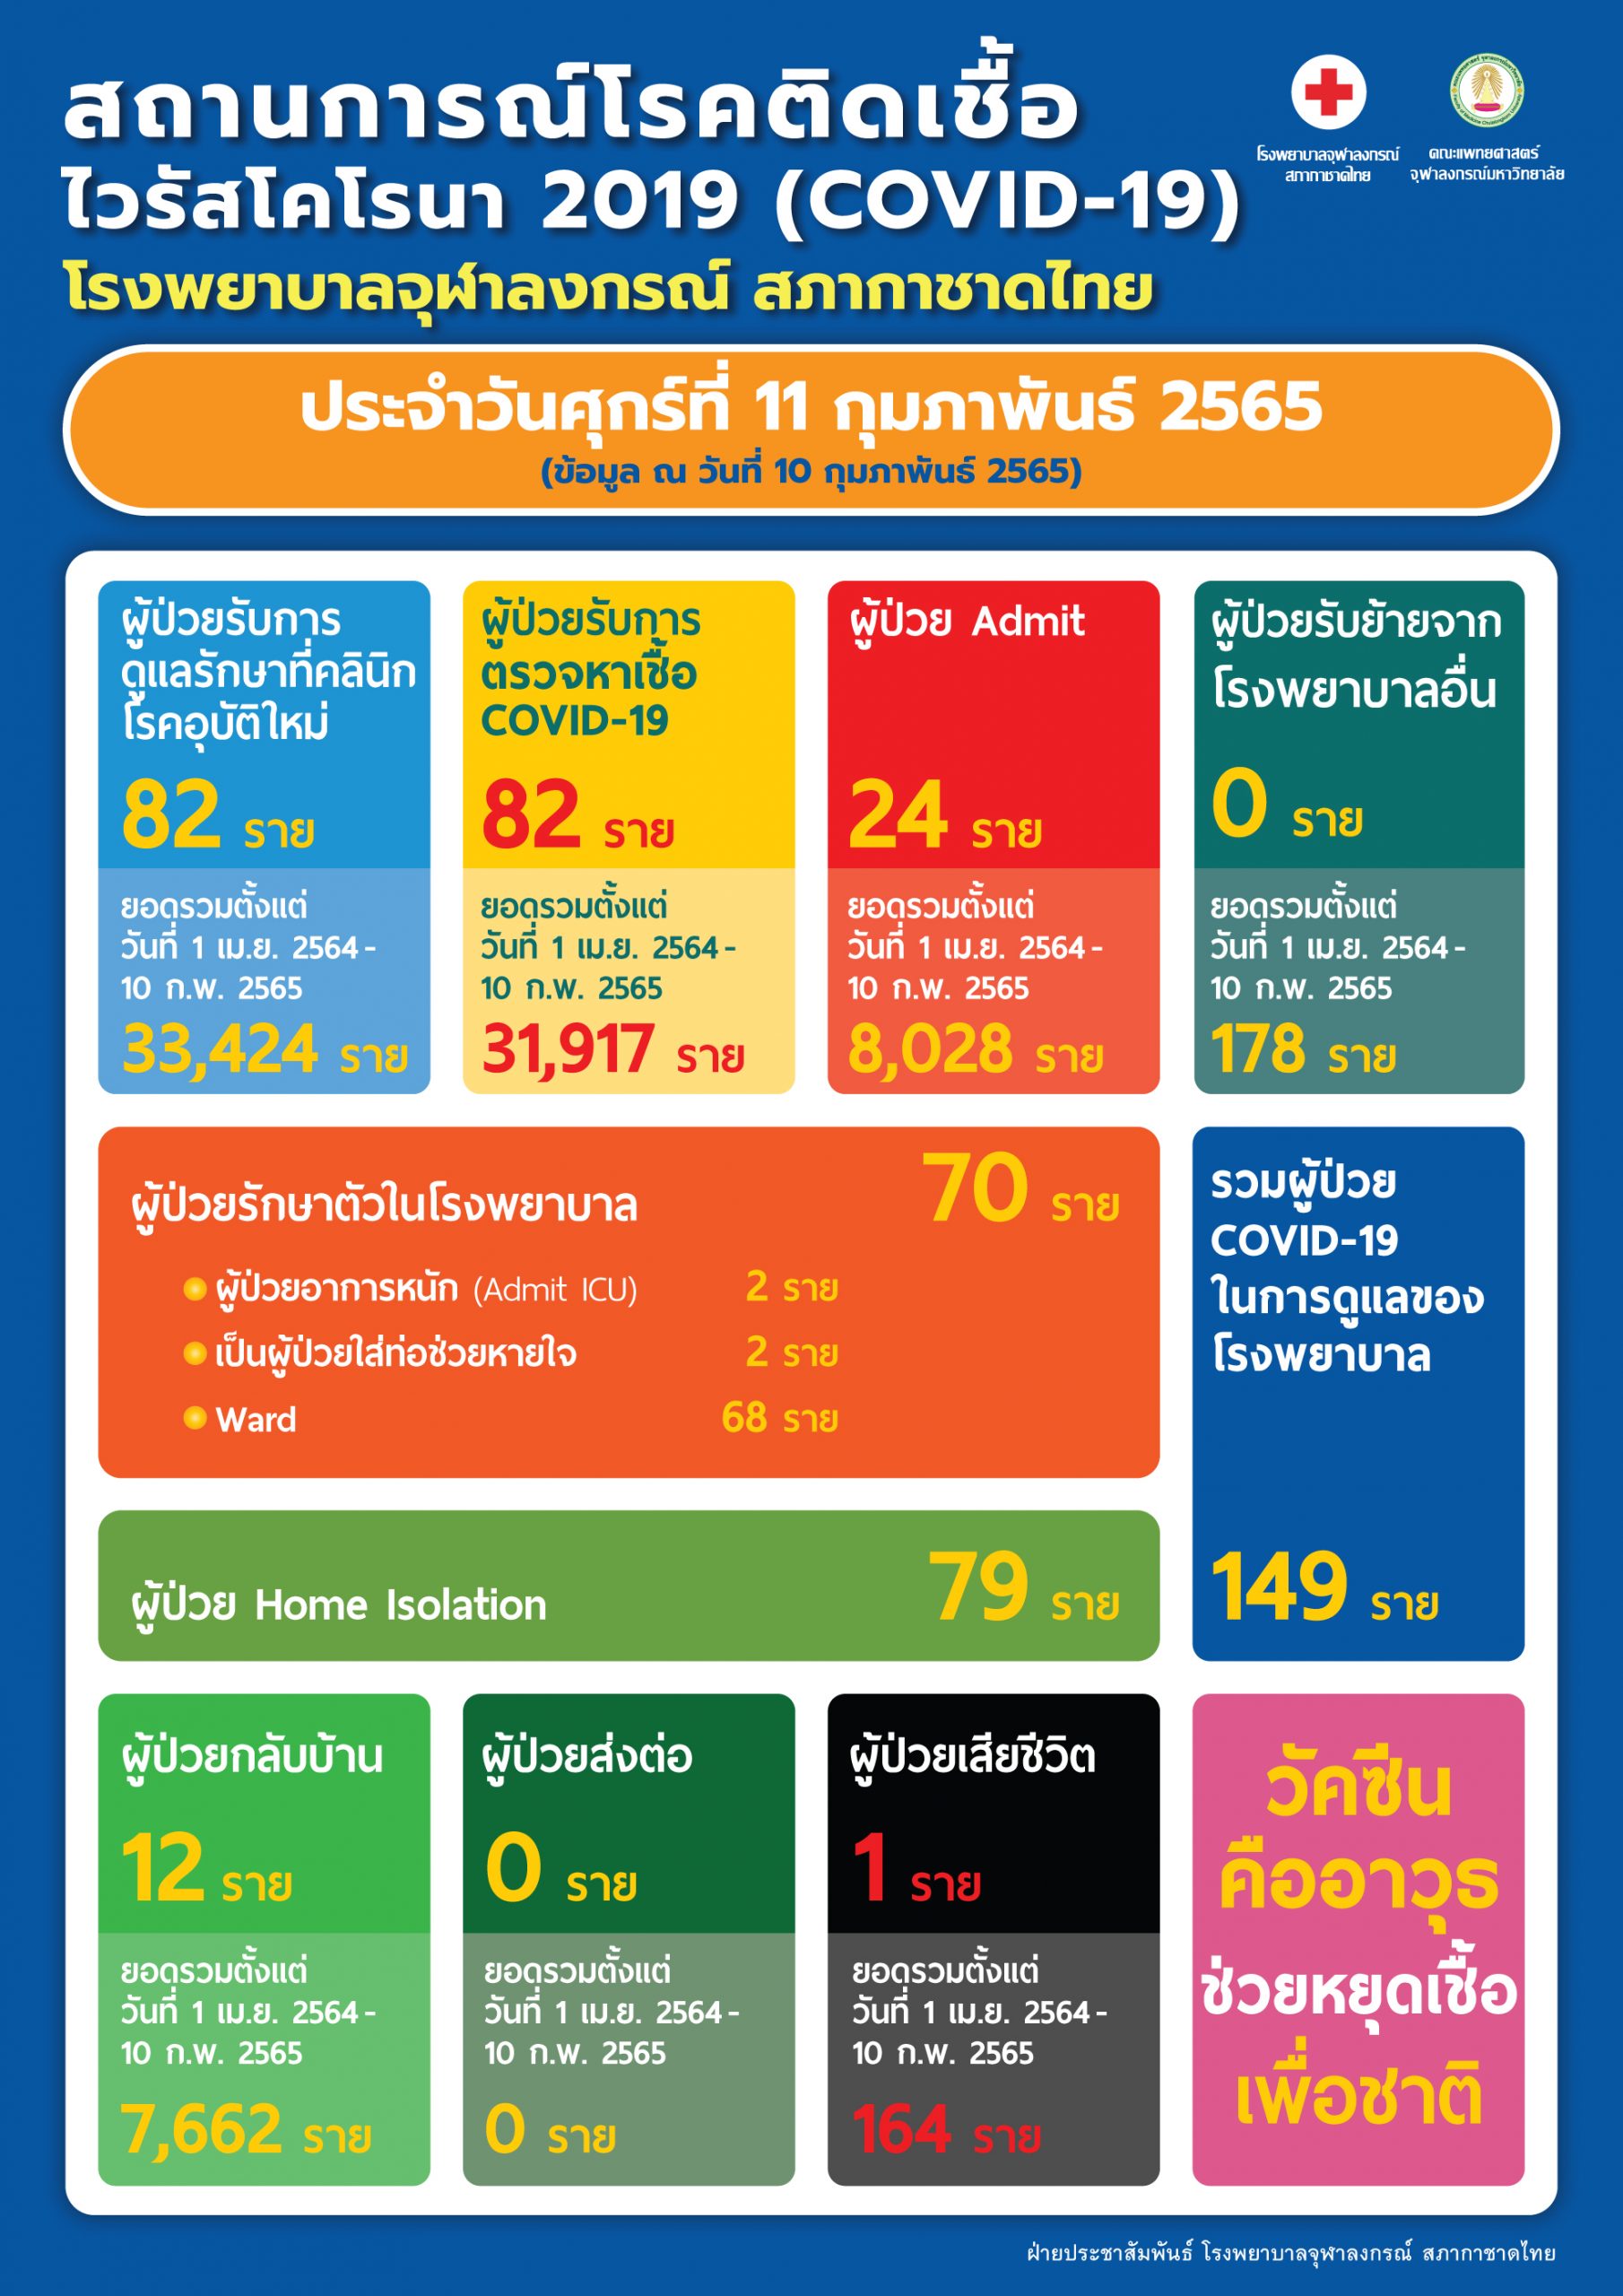 สถานการณ์โรคติดเชื้อไวรัสโคโรนา 2019 (COVID-19) โรงพยาบาลจุฬาลงกรณ์ สภากาชาดไทย ประจำวันศุกร์ที่ 11 กุมภาพันธ์ 2565